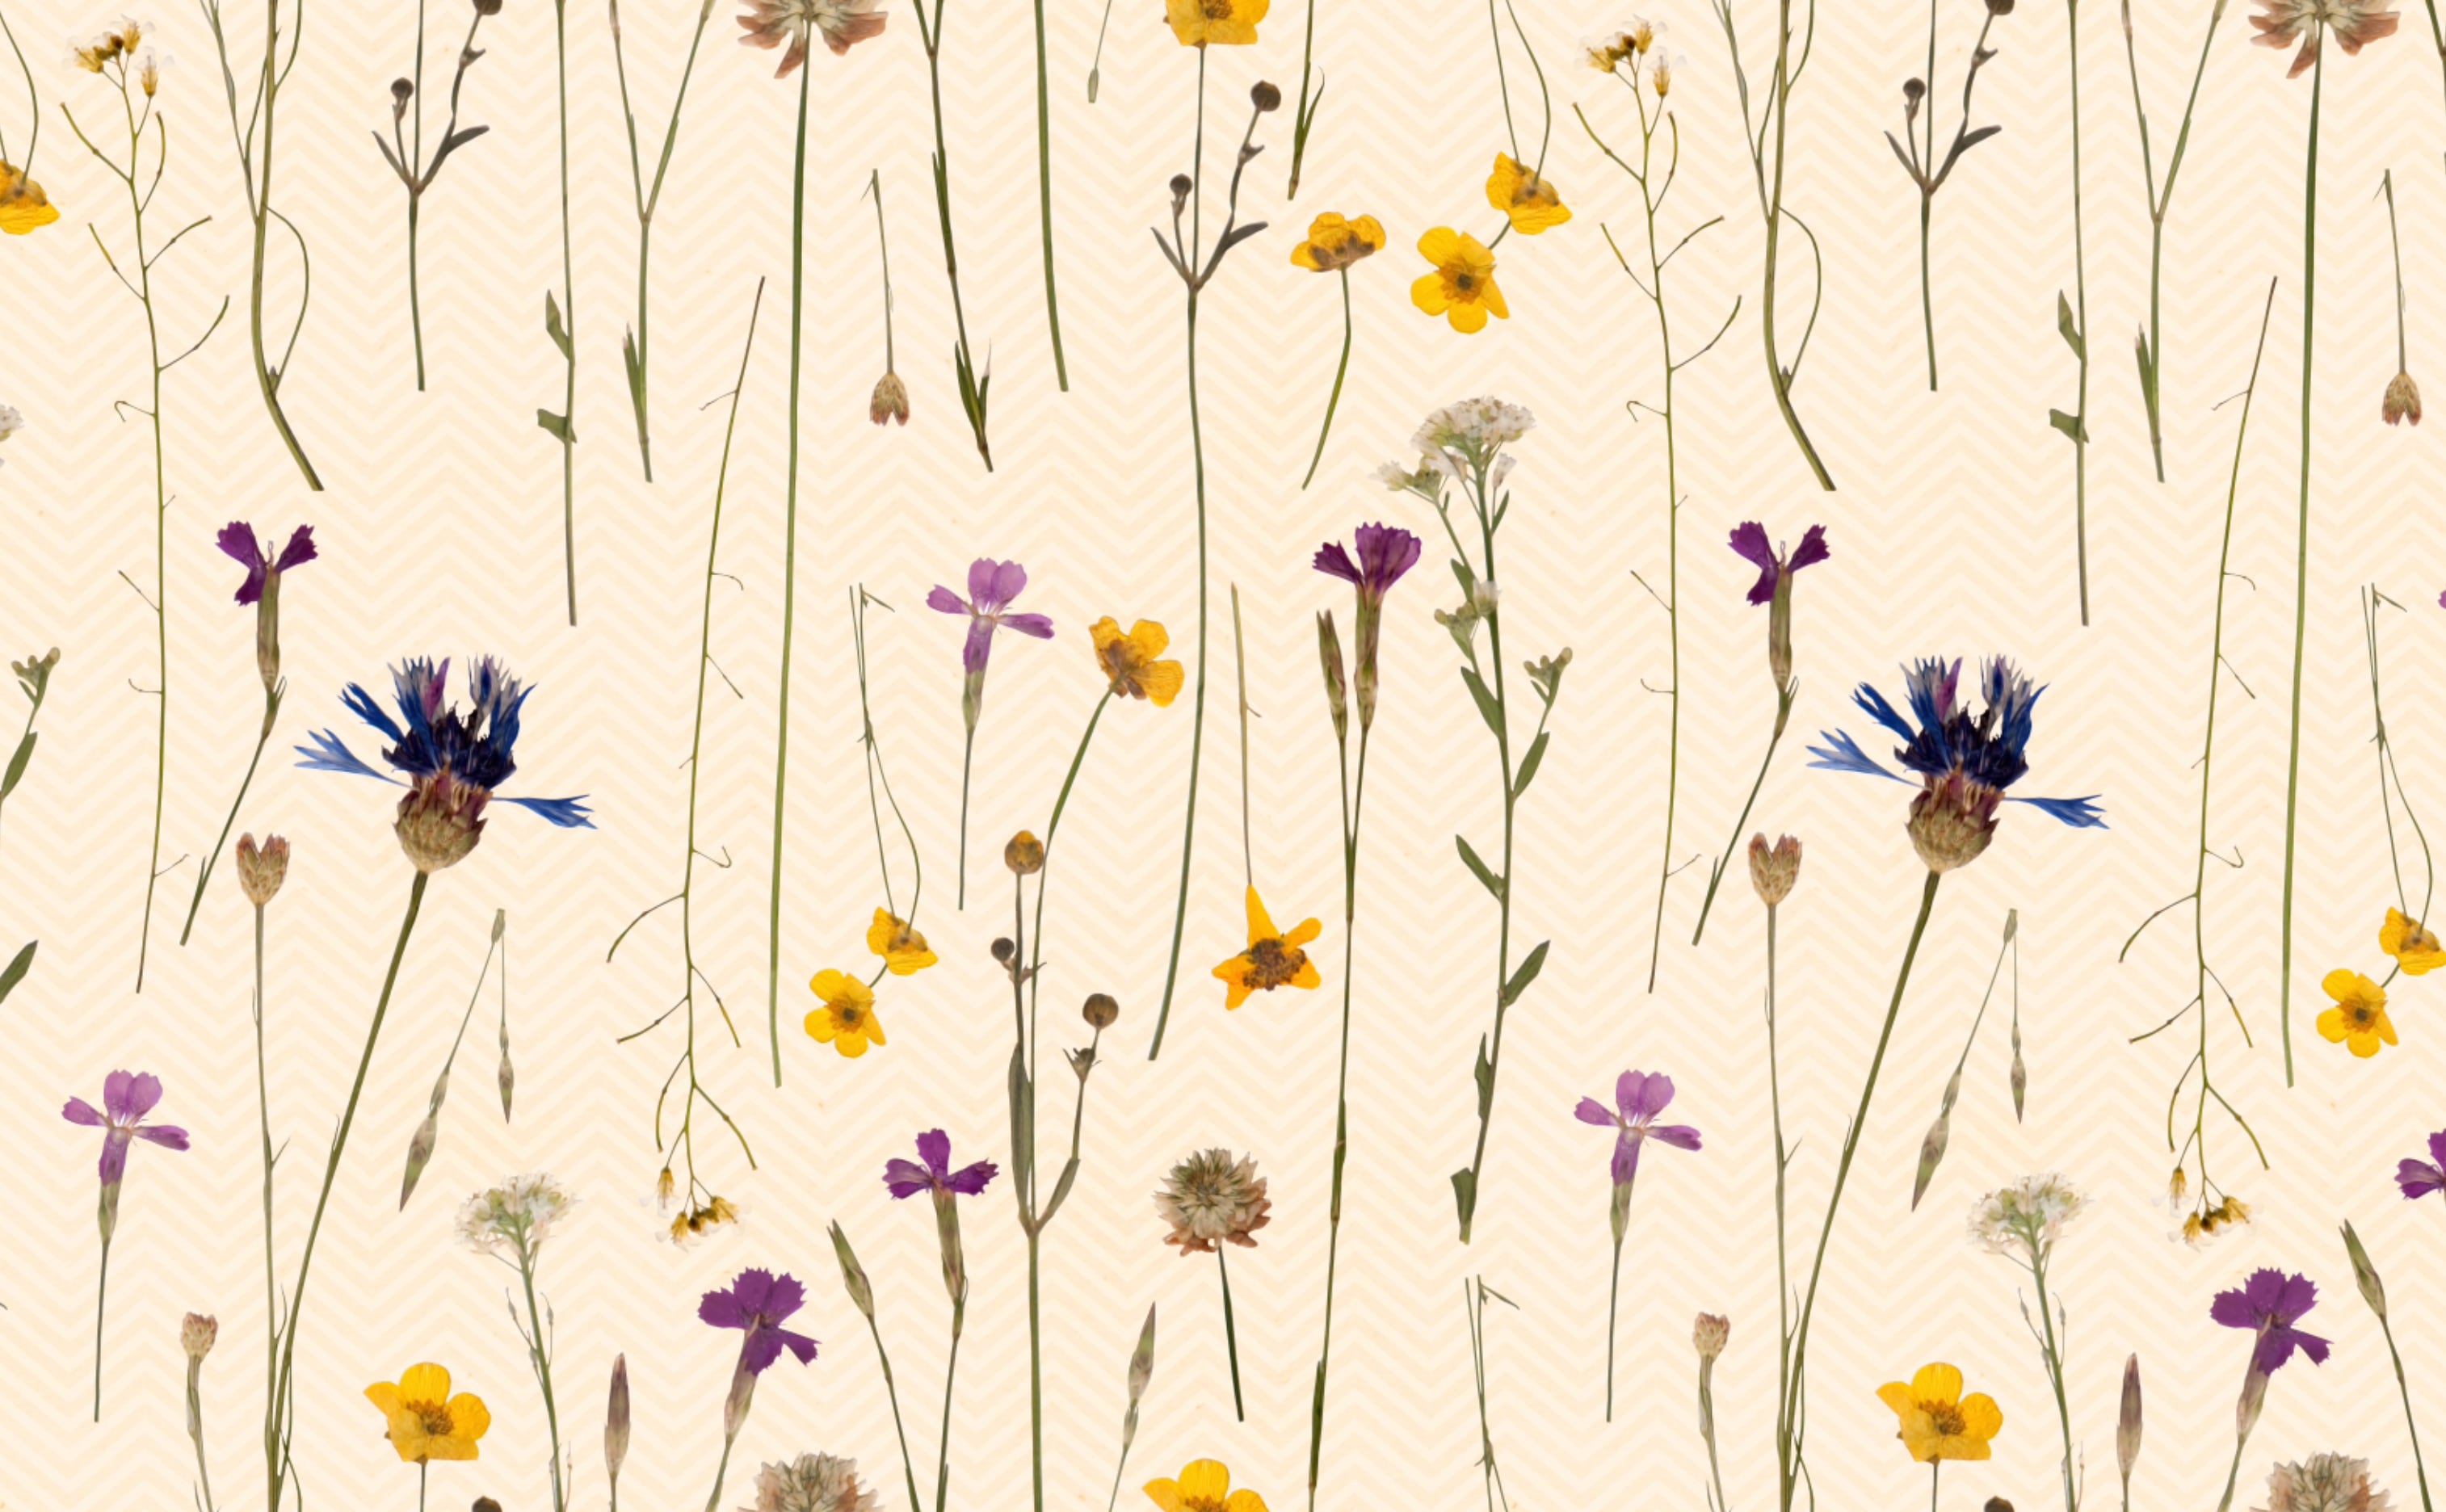 900 Flower wallpaper ideas in 2023  flower wallpaper wallpaper flower  phone wallpaper